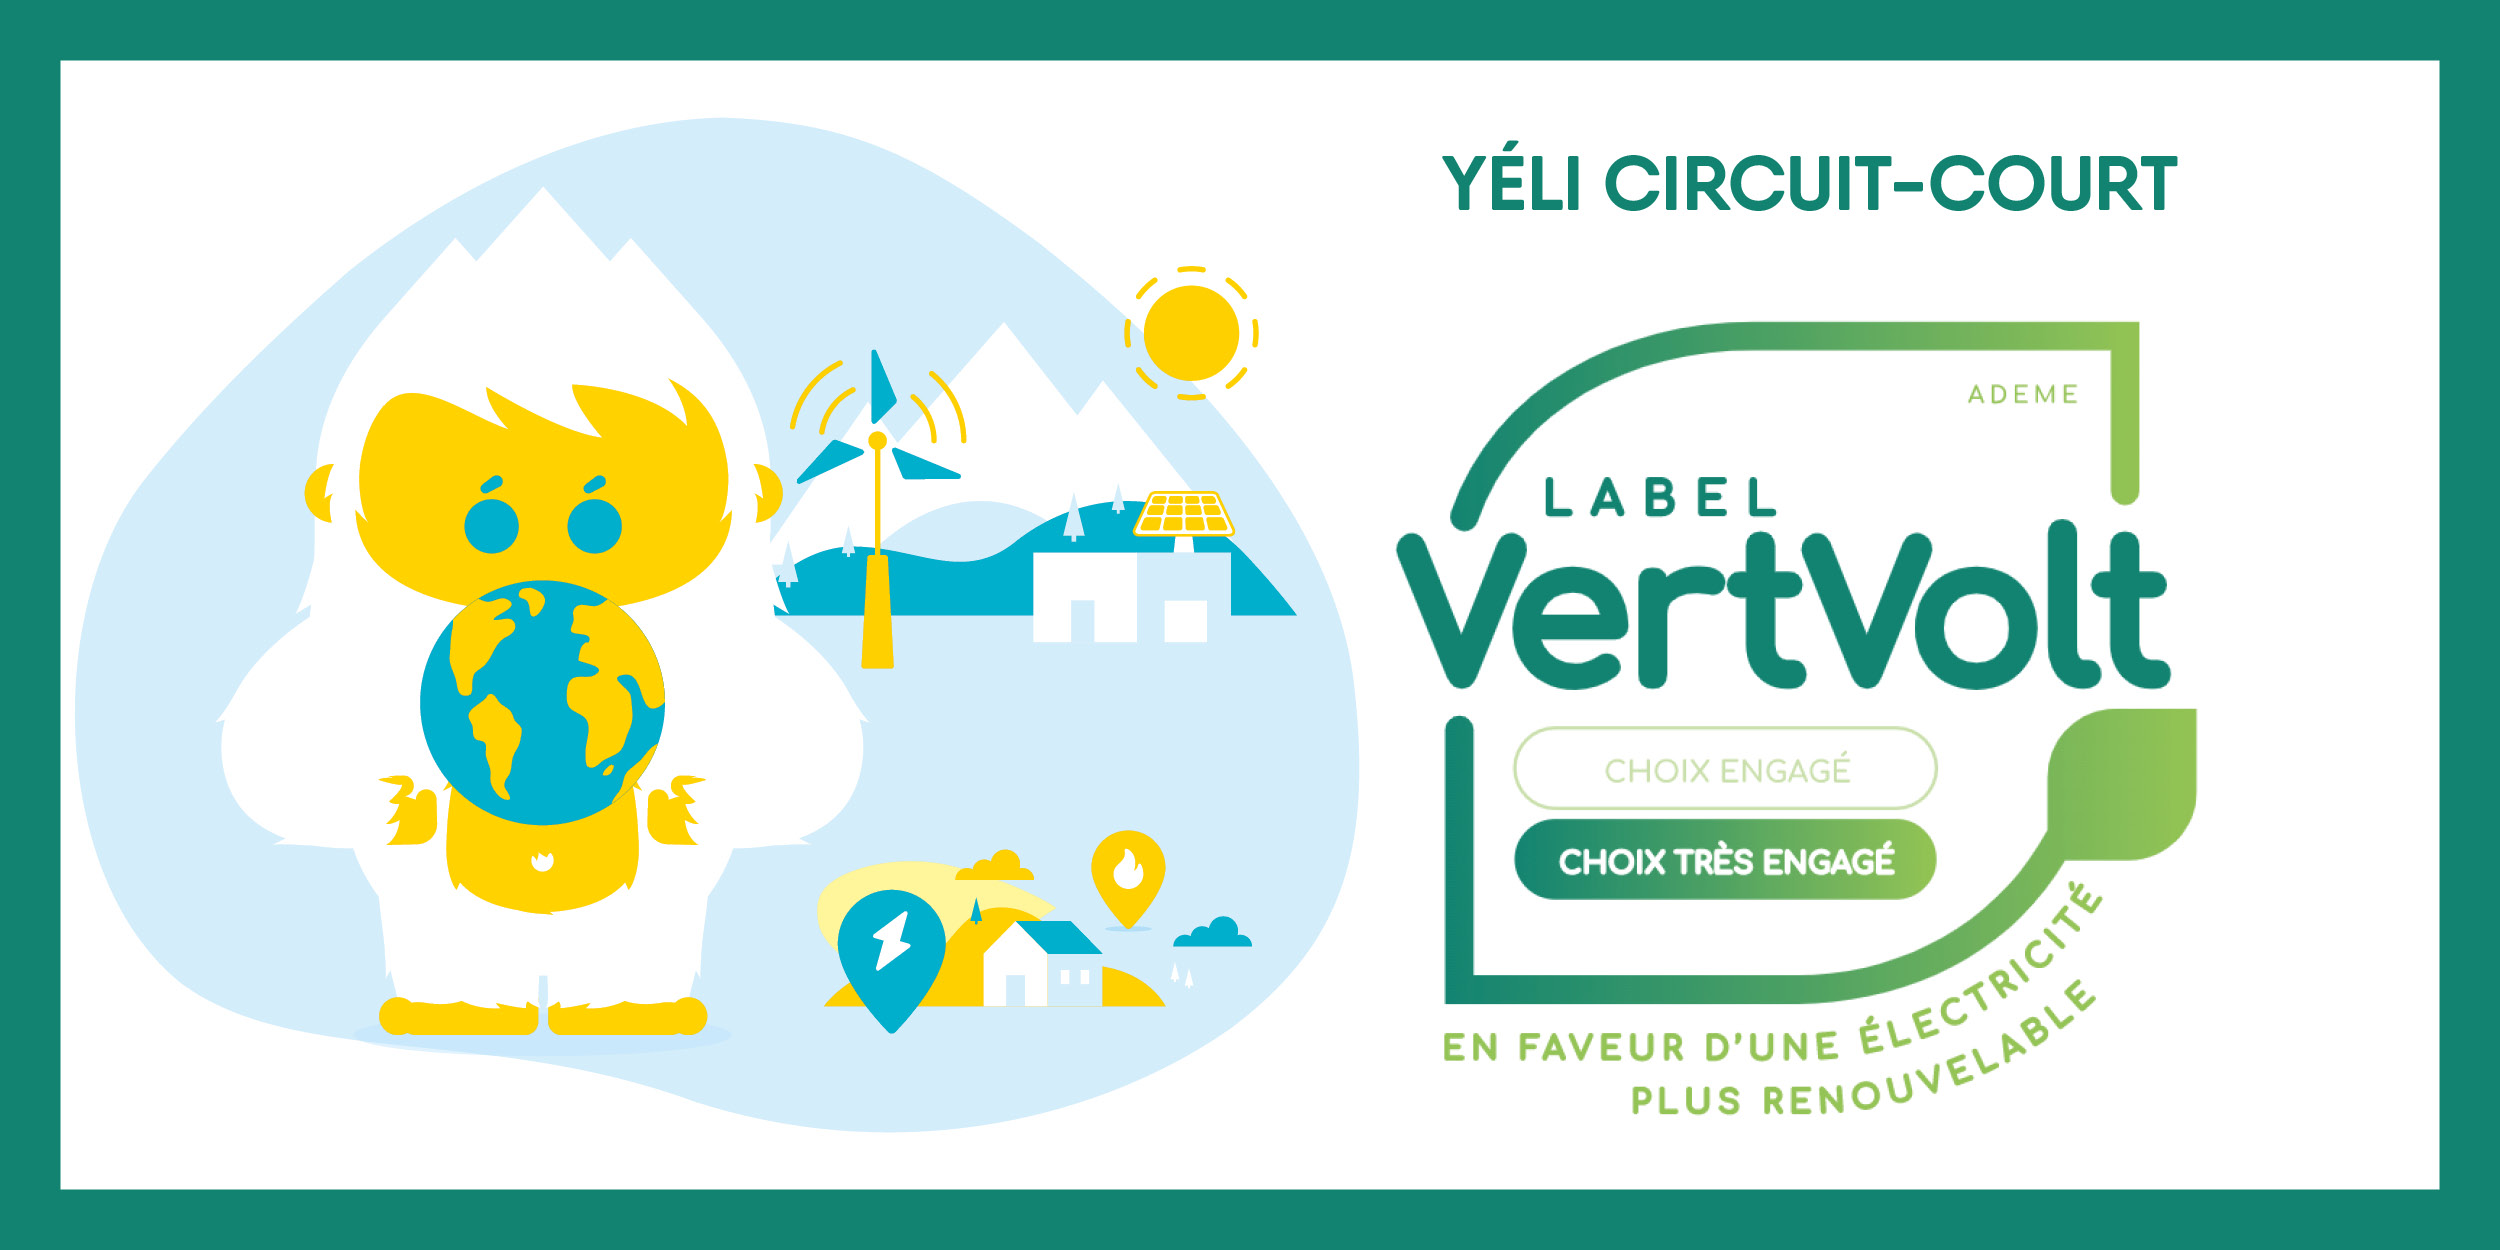 Yeli est labelisé VertVolt Niveau 2